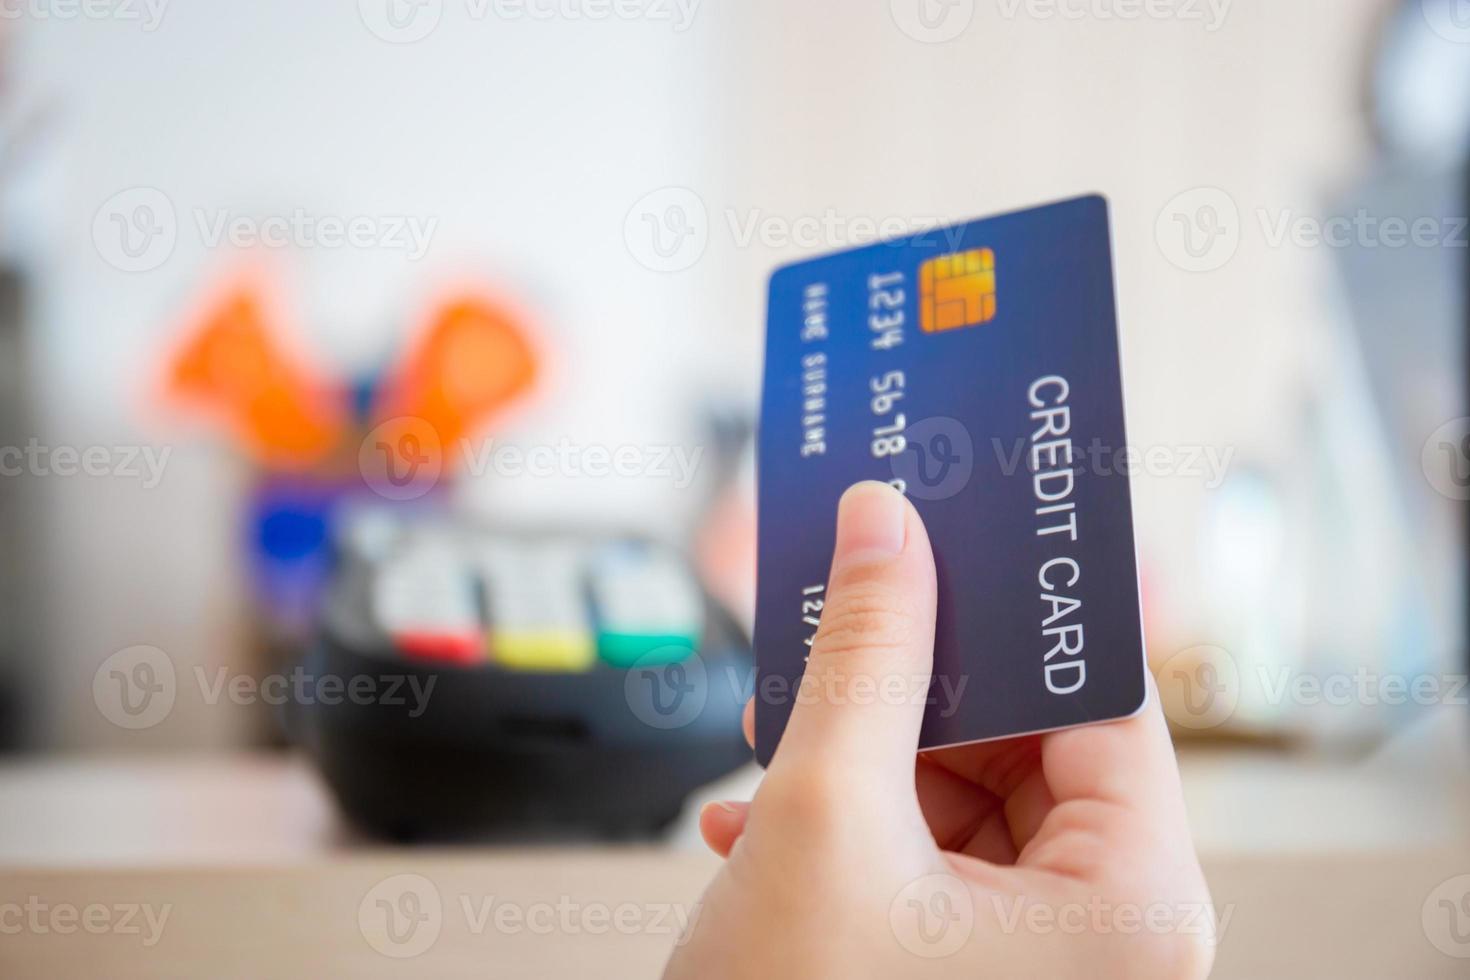 mão do cliente com máquina de leitor de cartão de crédito turva de cartão de crédito no balcão de bar, conceito de pagamento foto